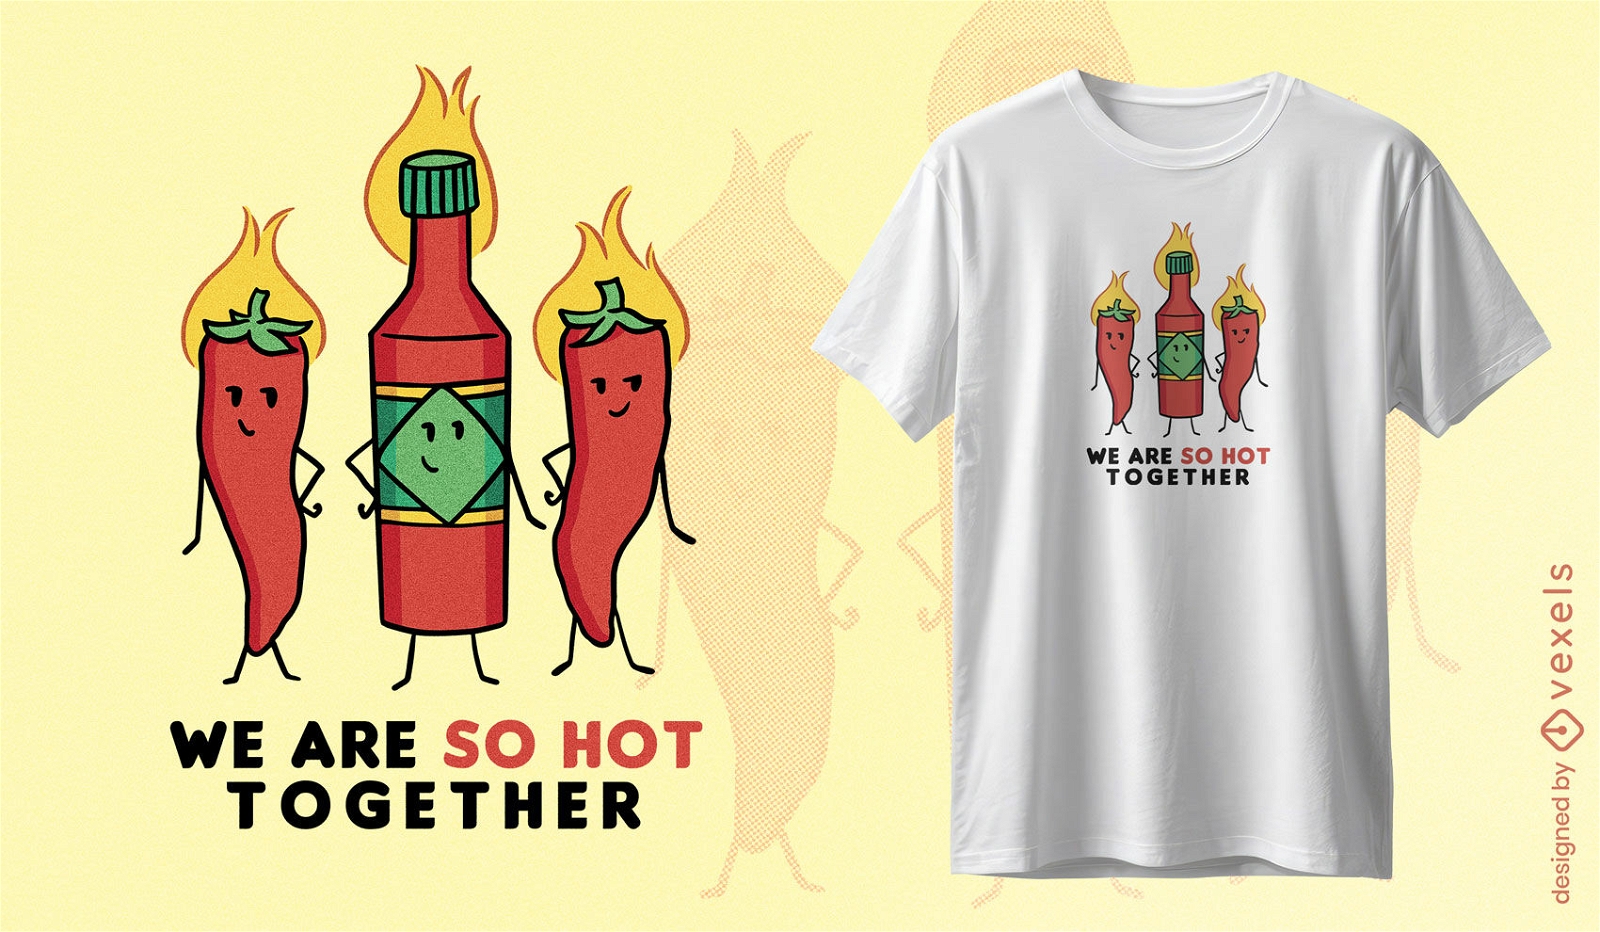 Diseño de camiseta de comida picante y caliente.